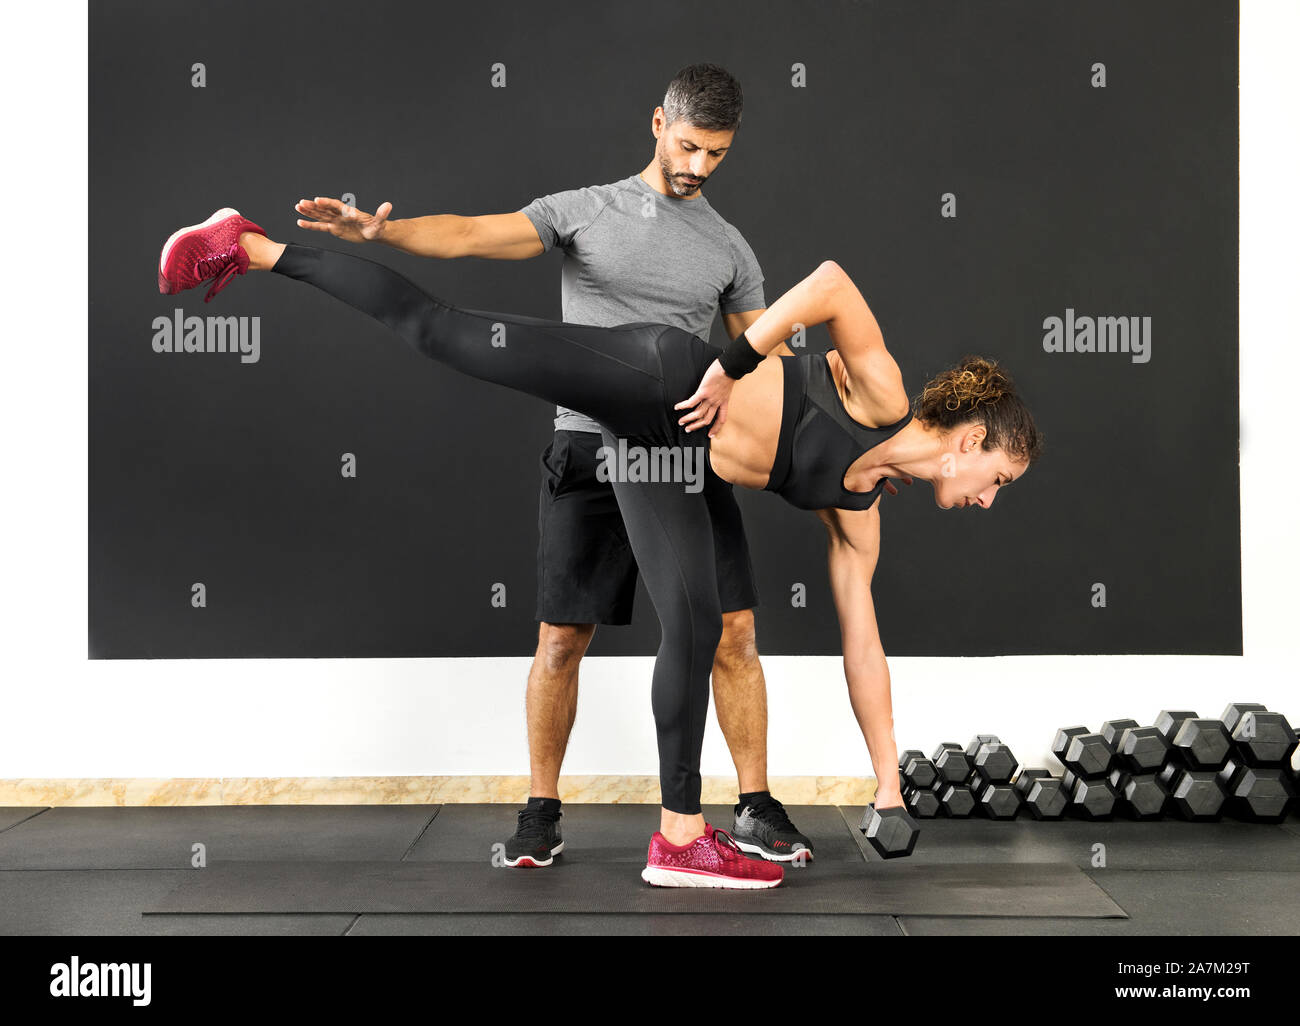 Athletische Frau tun, ein einzelnes Bein Kreuzheben mit einer Hantel, Gewicht, unterstützt von einem männlichen Personal Trainer in einer Turnhalle in einem Gesundheit und Fitness Concept Stockfoto